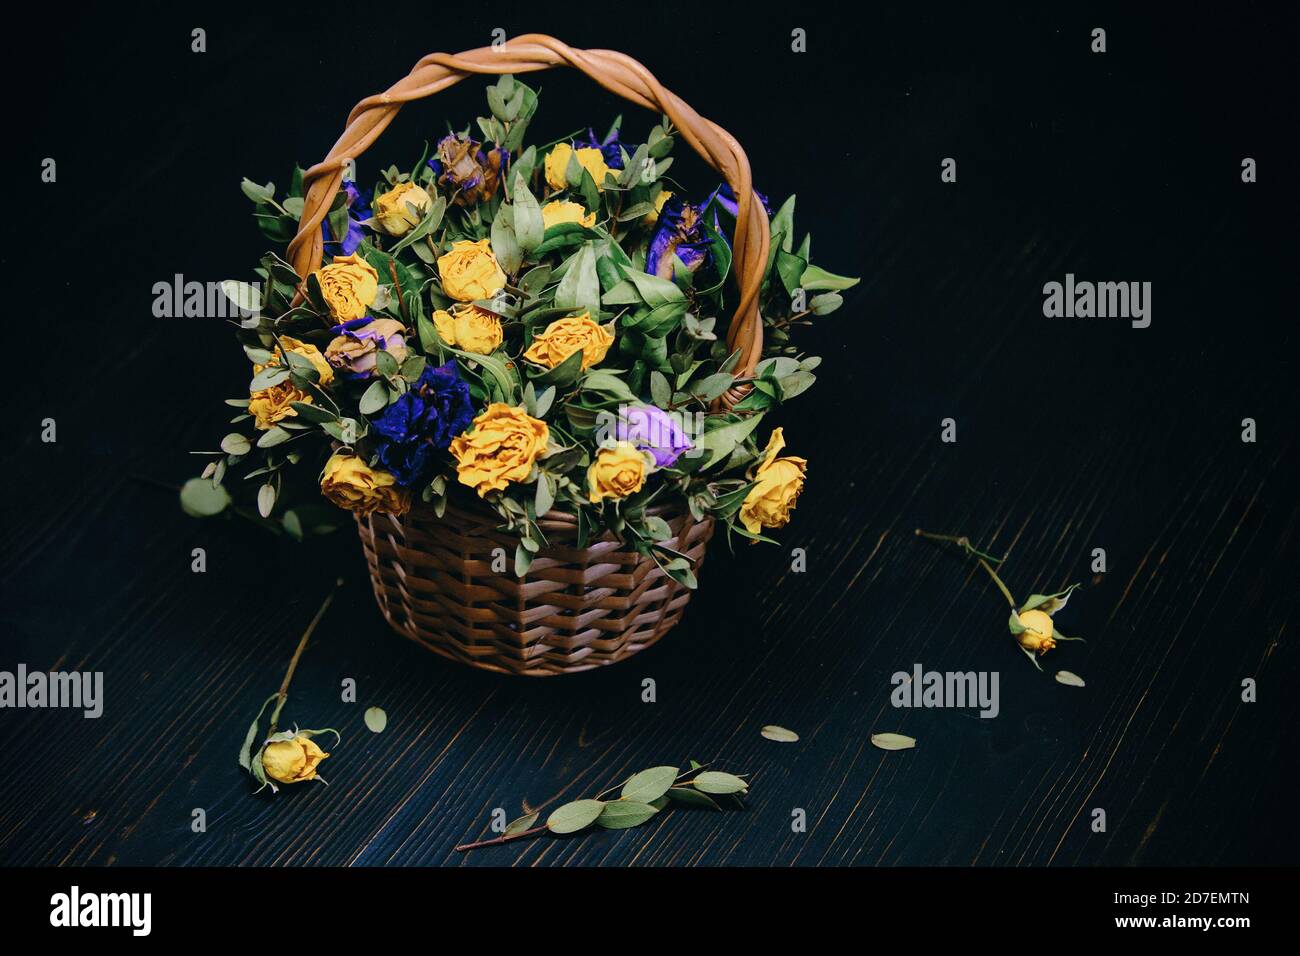 Verwelkte Rosen mit gefallenen Blättern auf einem schwarzen Holzhintergrund. Weidenkorb mit trockenen gelben und blauen Blüten. Herbstzusammensetzung von Rosen. Wunderschön Stockfoto